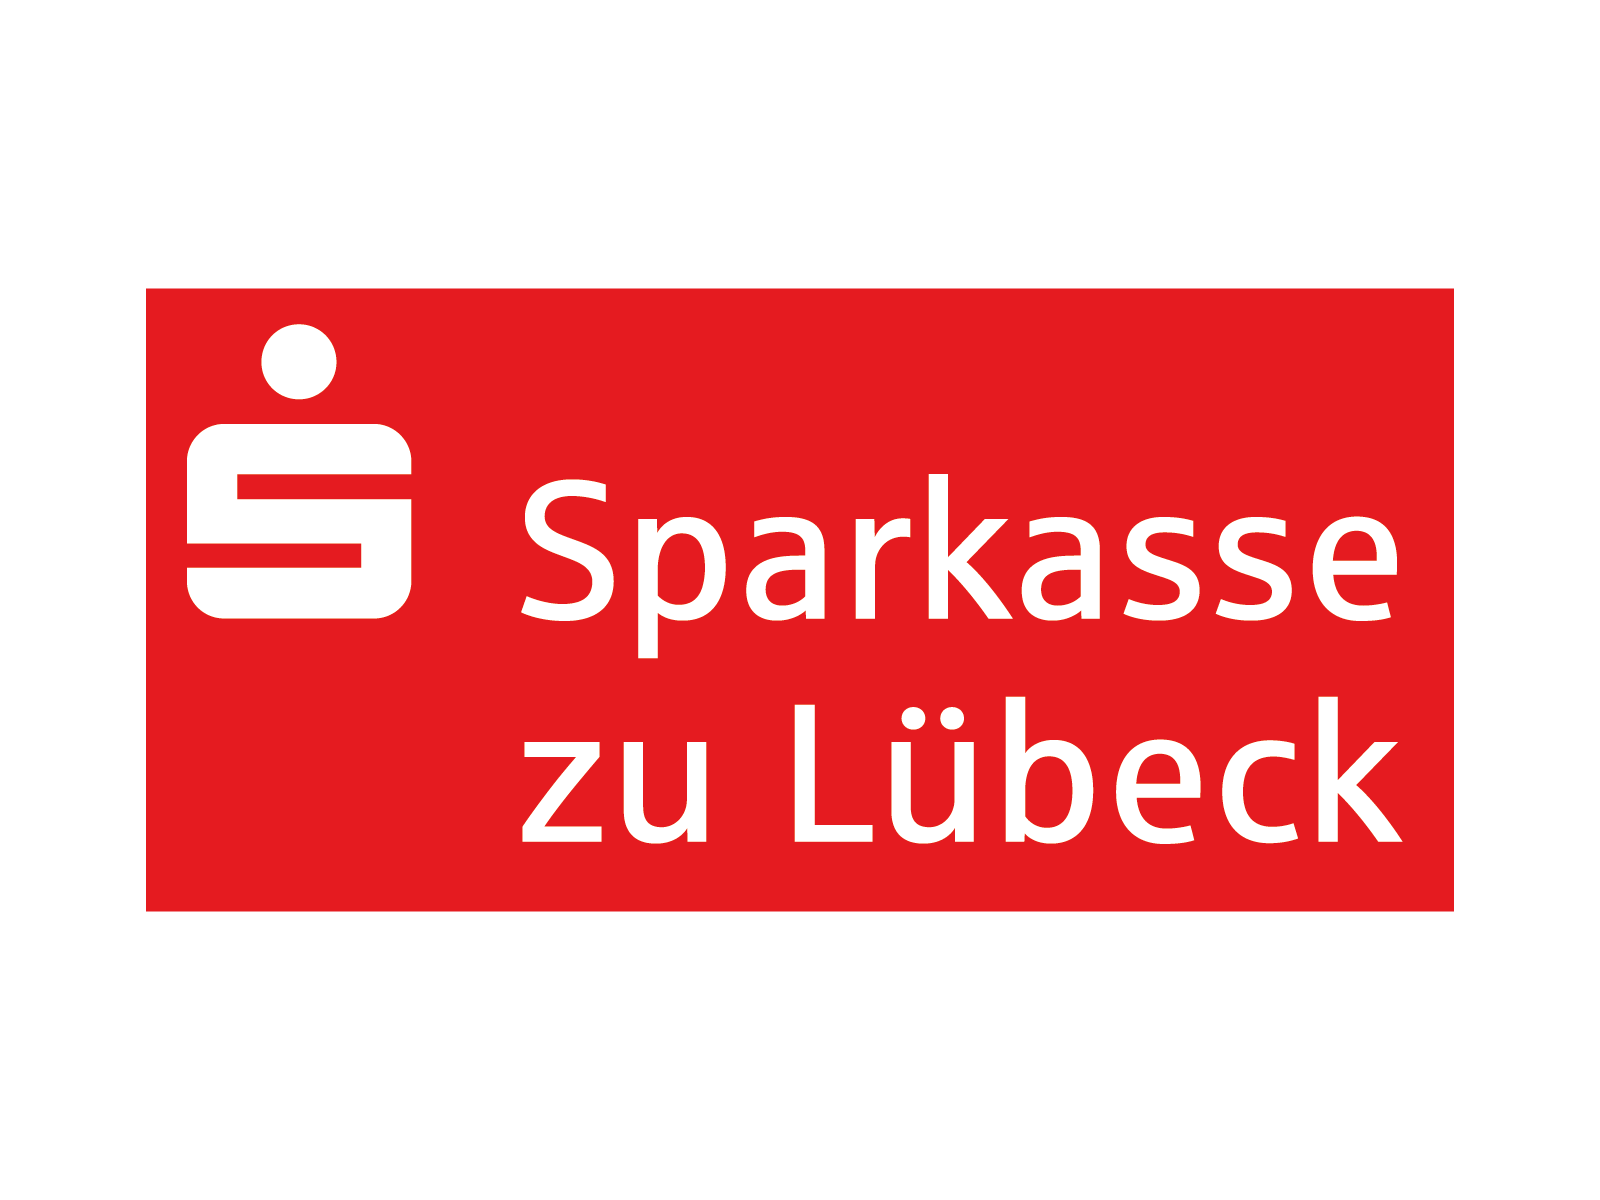 Sparkasse zu Lübeck